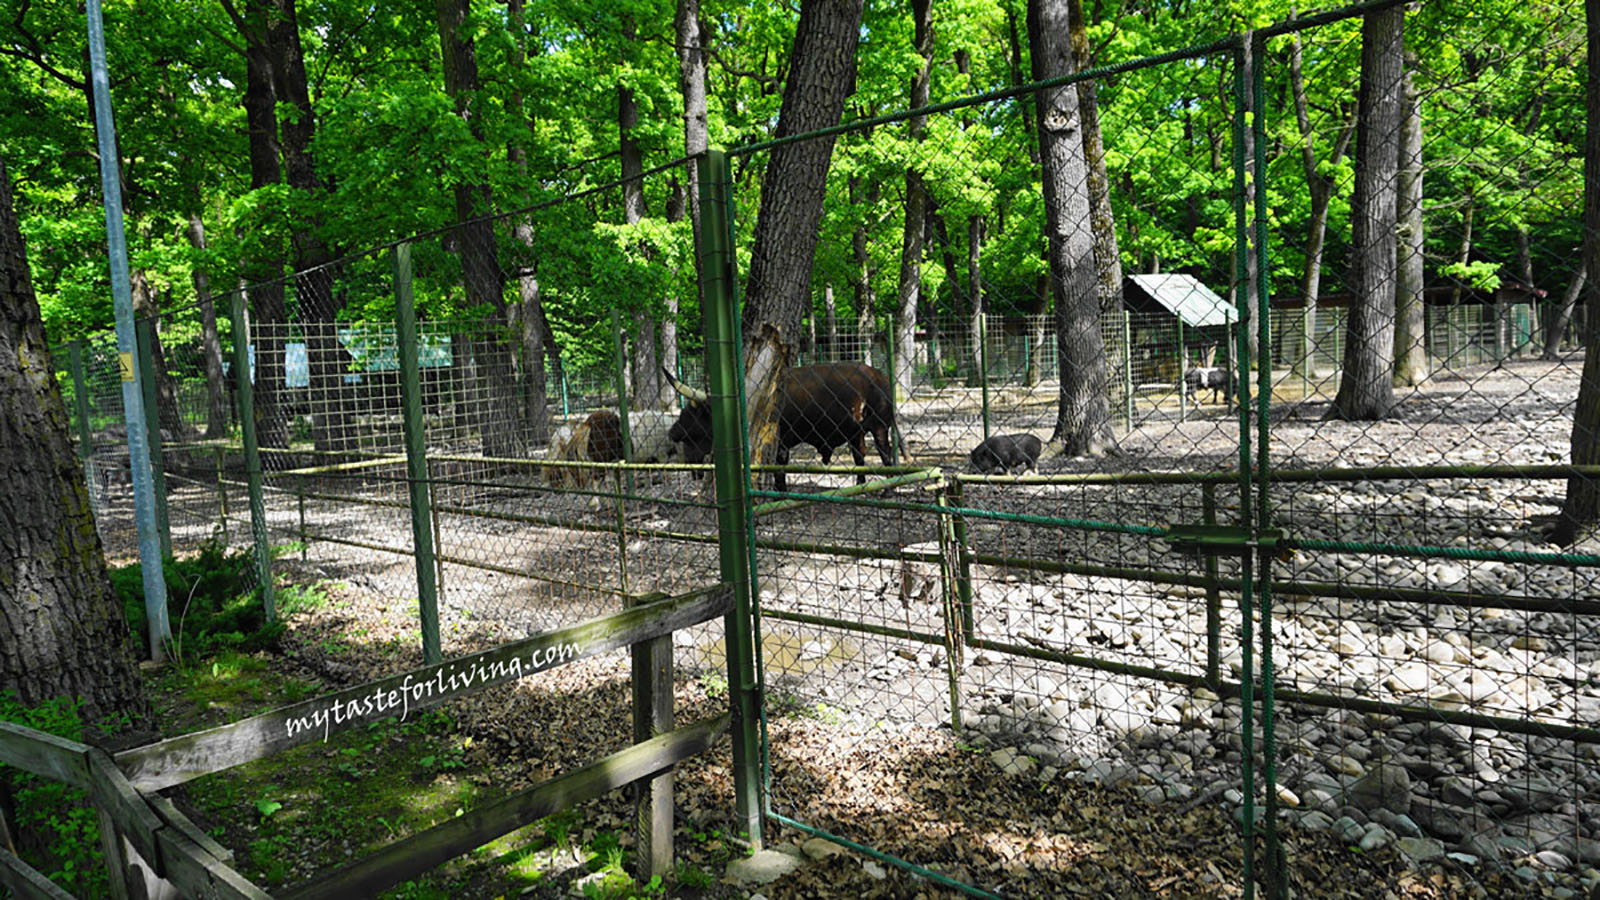 Зоопаркът в град Питещи, Румъния се намира в естествения горски парк “Trivale” и определено беше една приятна дестинация за посещение.